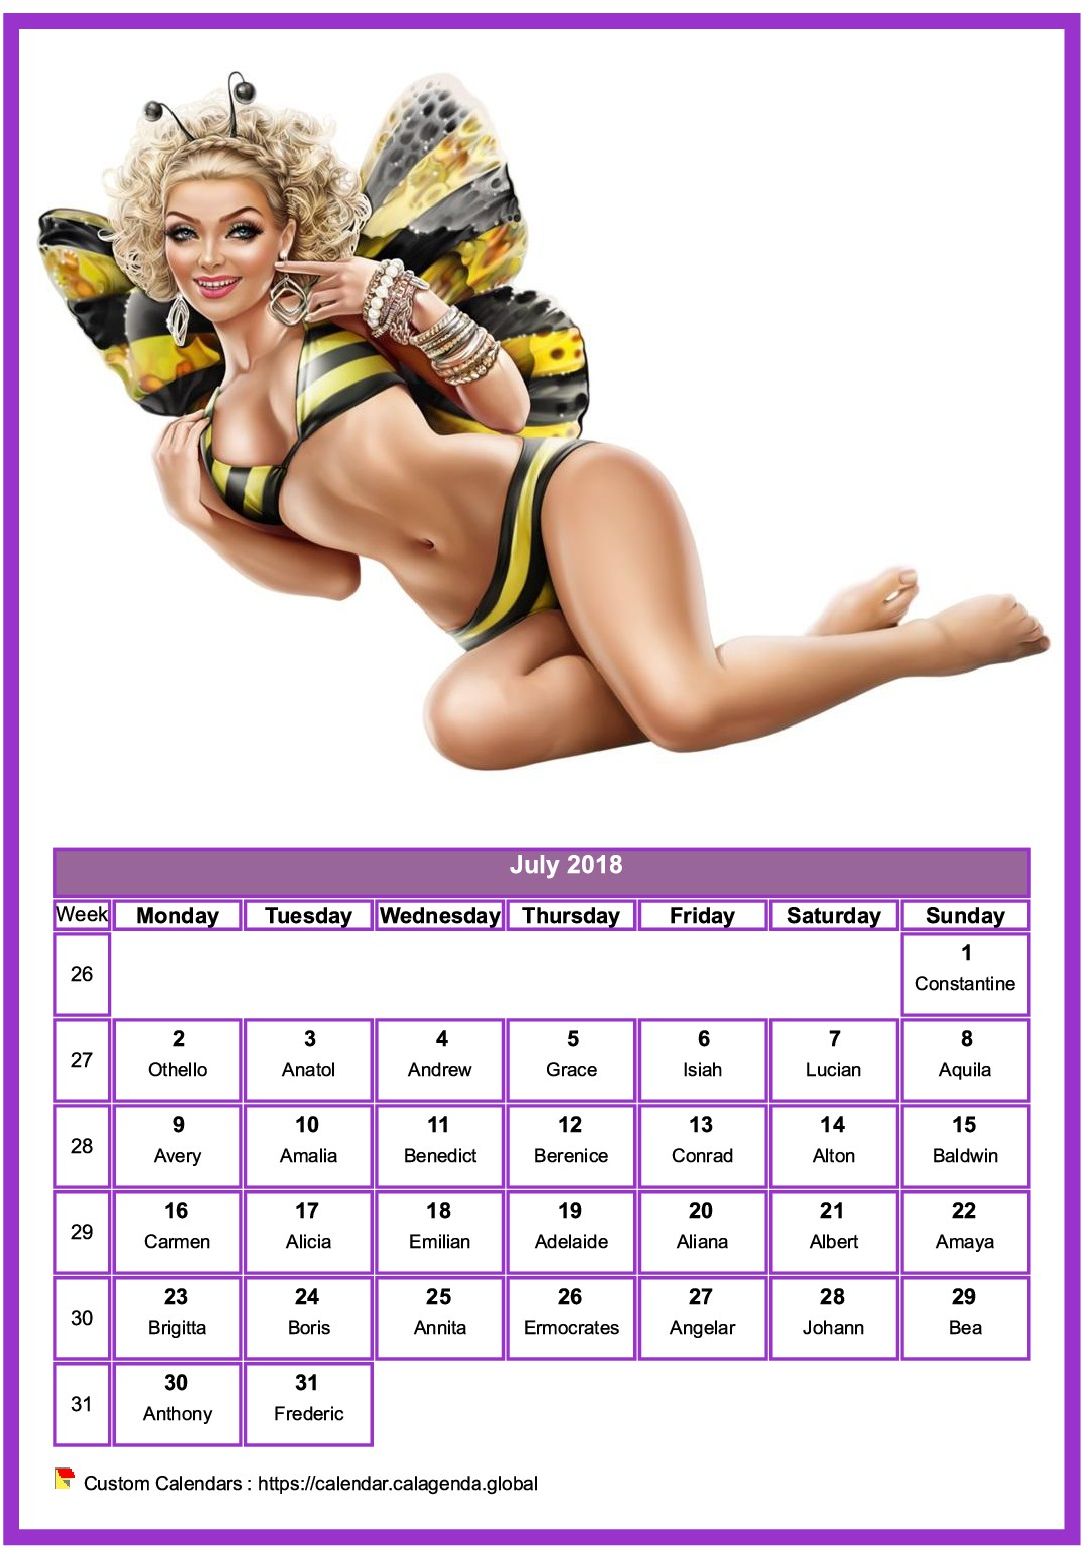 Calendar July 2018 women